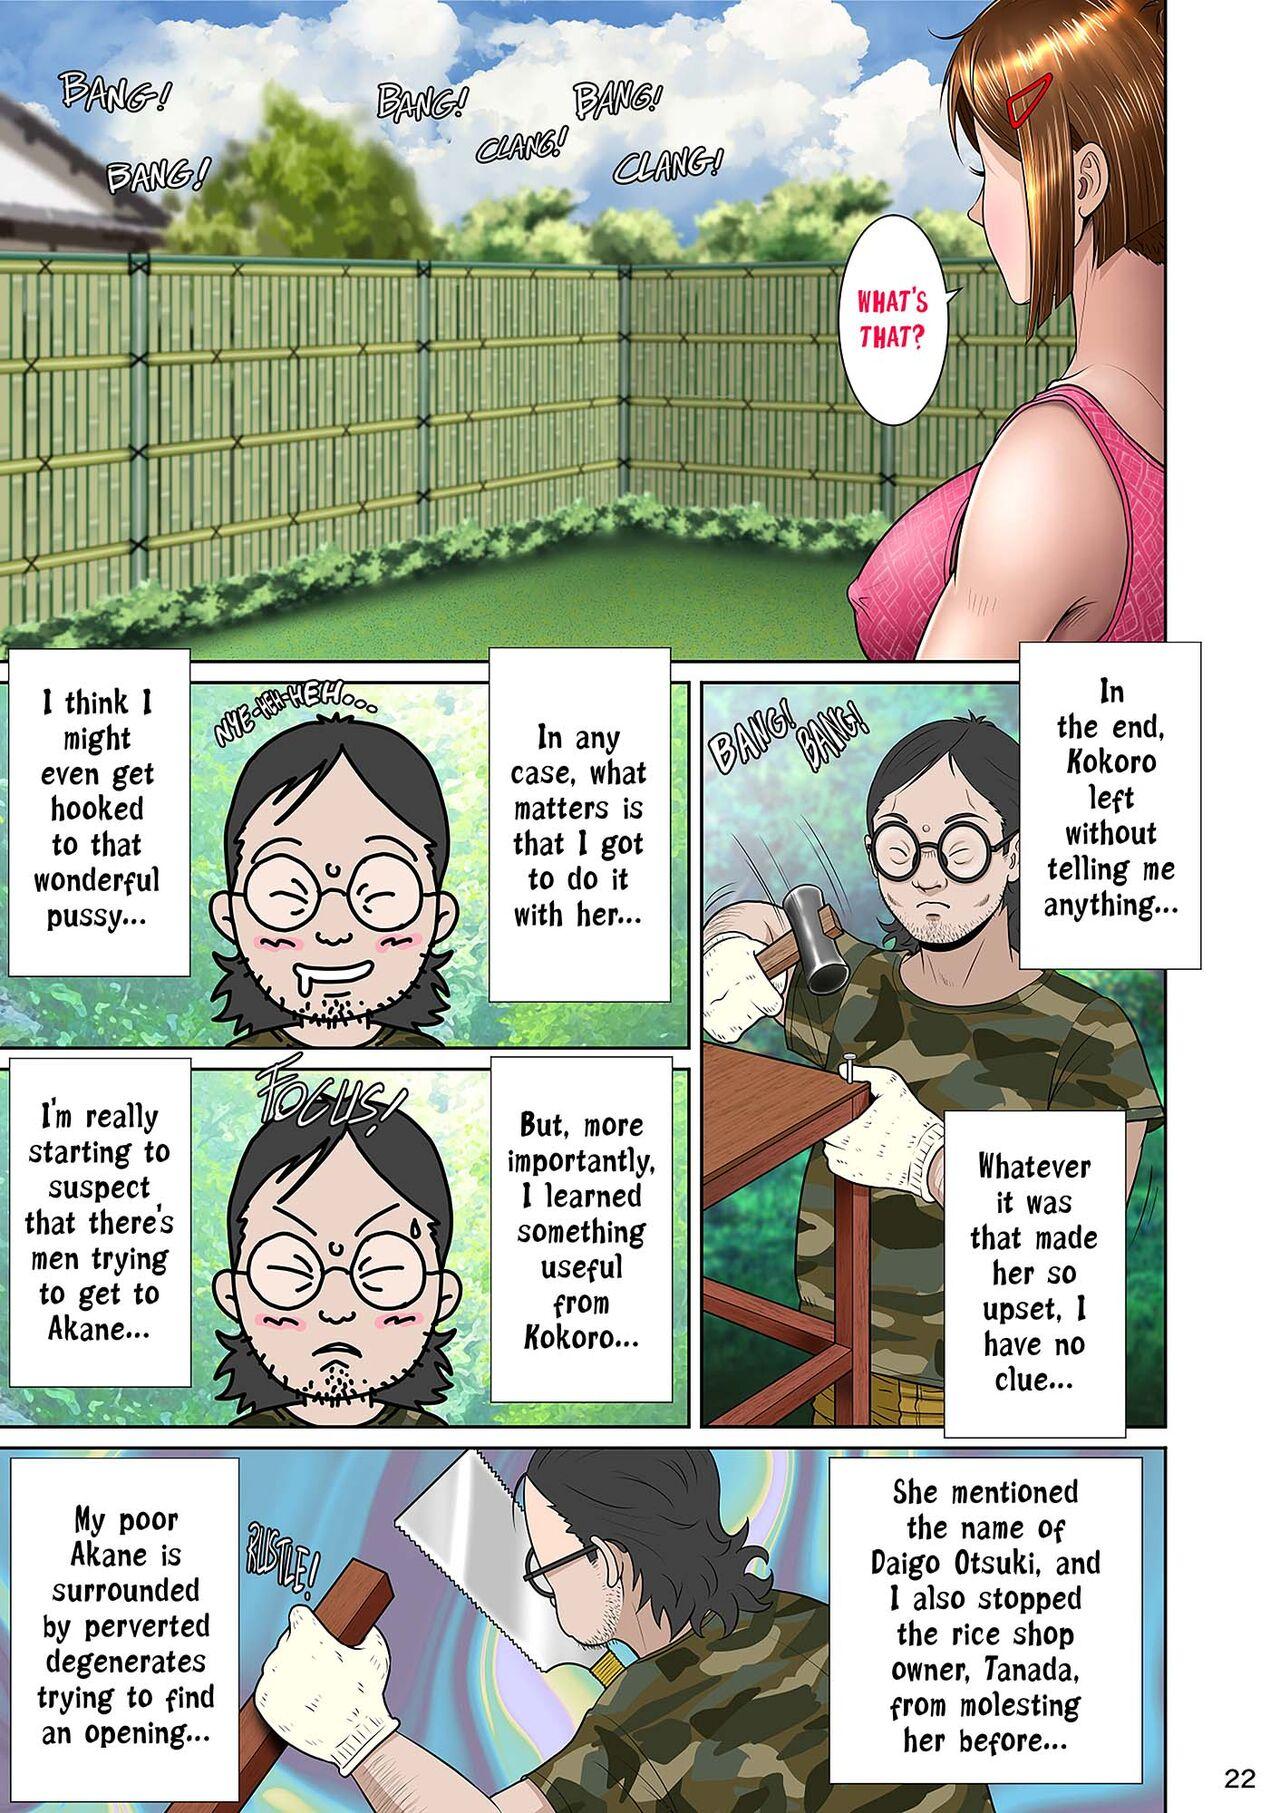 Kakine tsuma II daiichiwa | Wife on the Fence II - Chapter 3 32